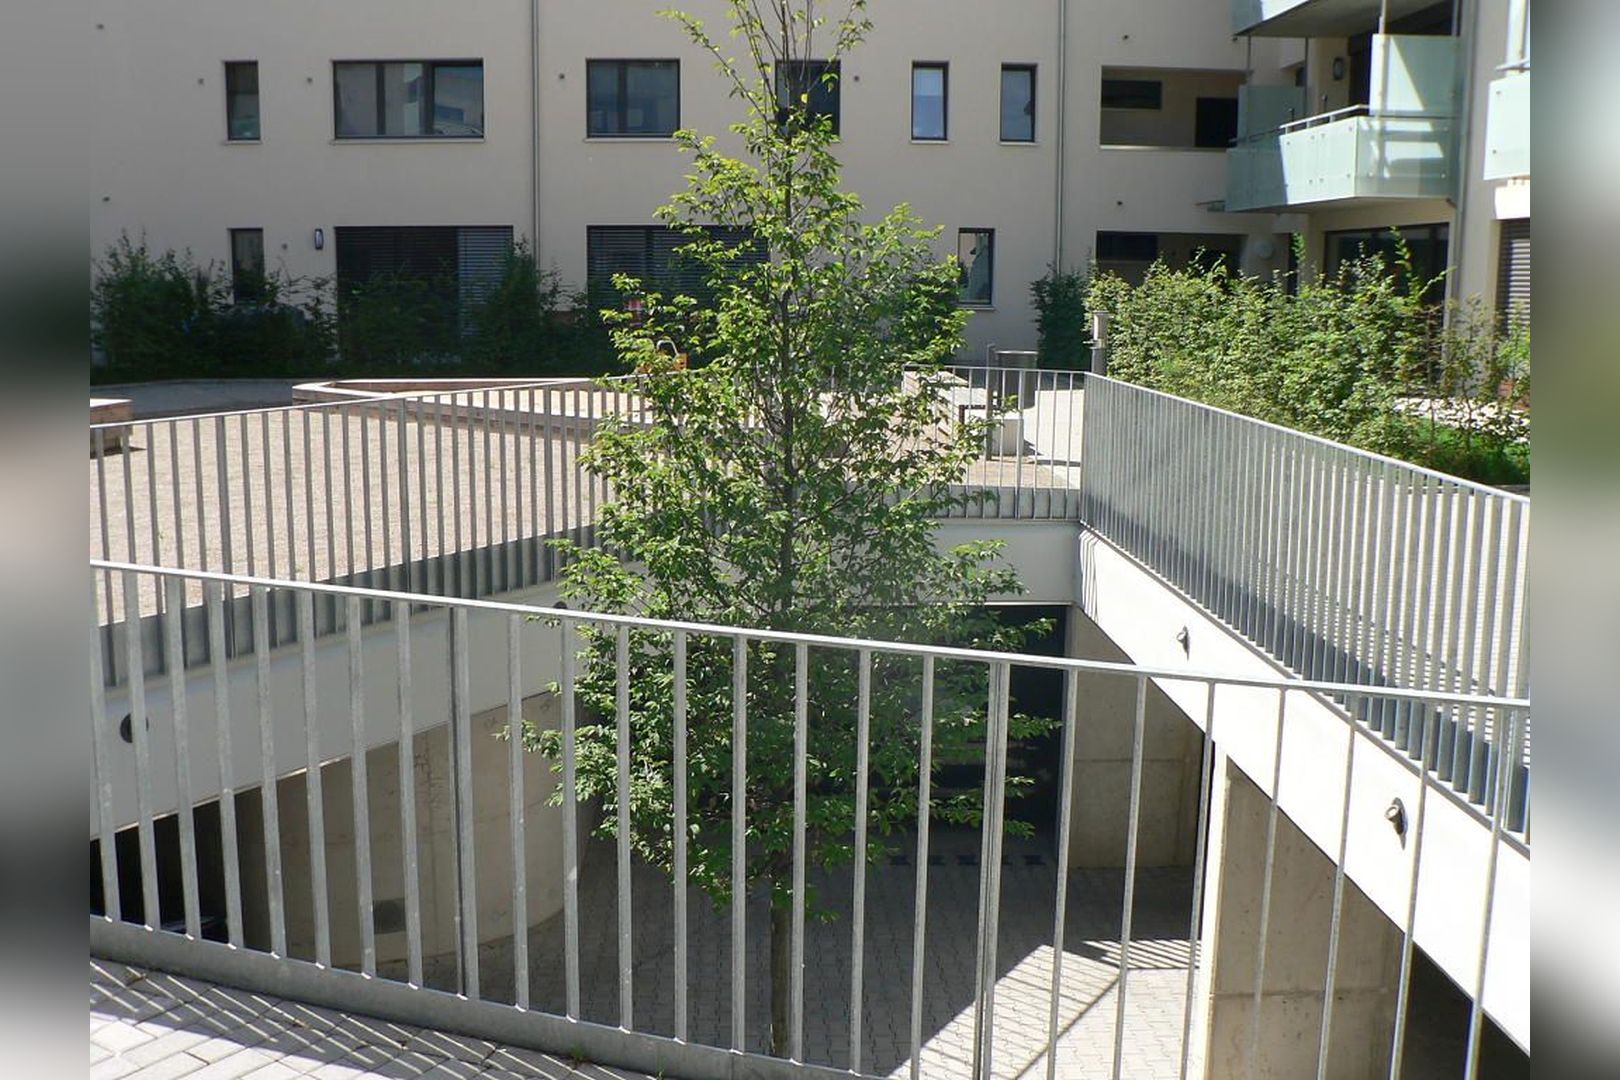 Immobilie Nr.Hilden 007 - 3-Raum-Maisonette-Wohnung mit geschlossenem Küchen u. Essbereich, Terrasse mit kl. Gartenfläche - Bild 15.jpg